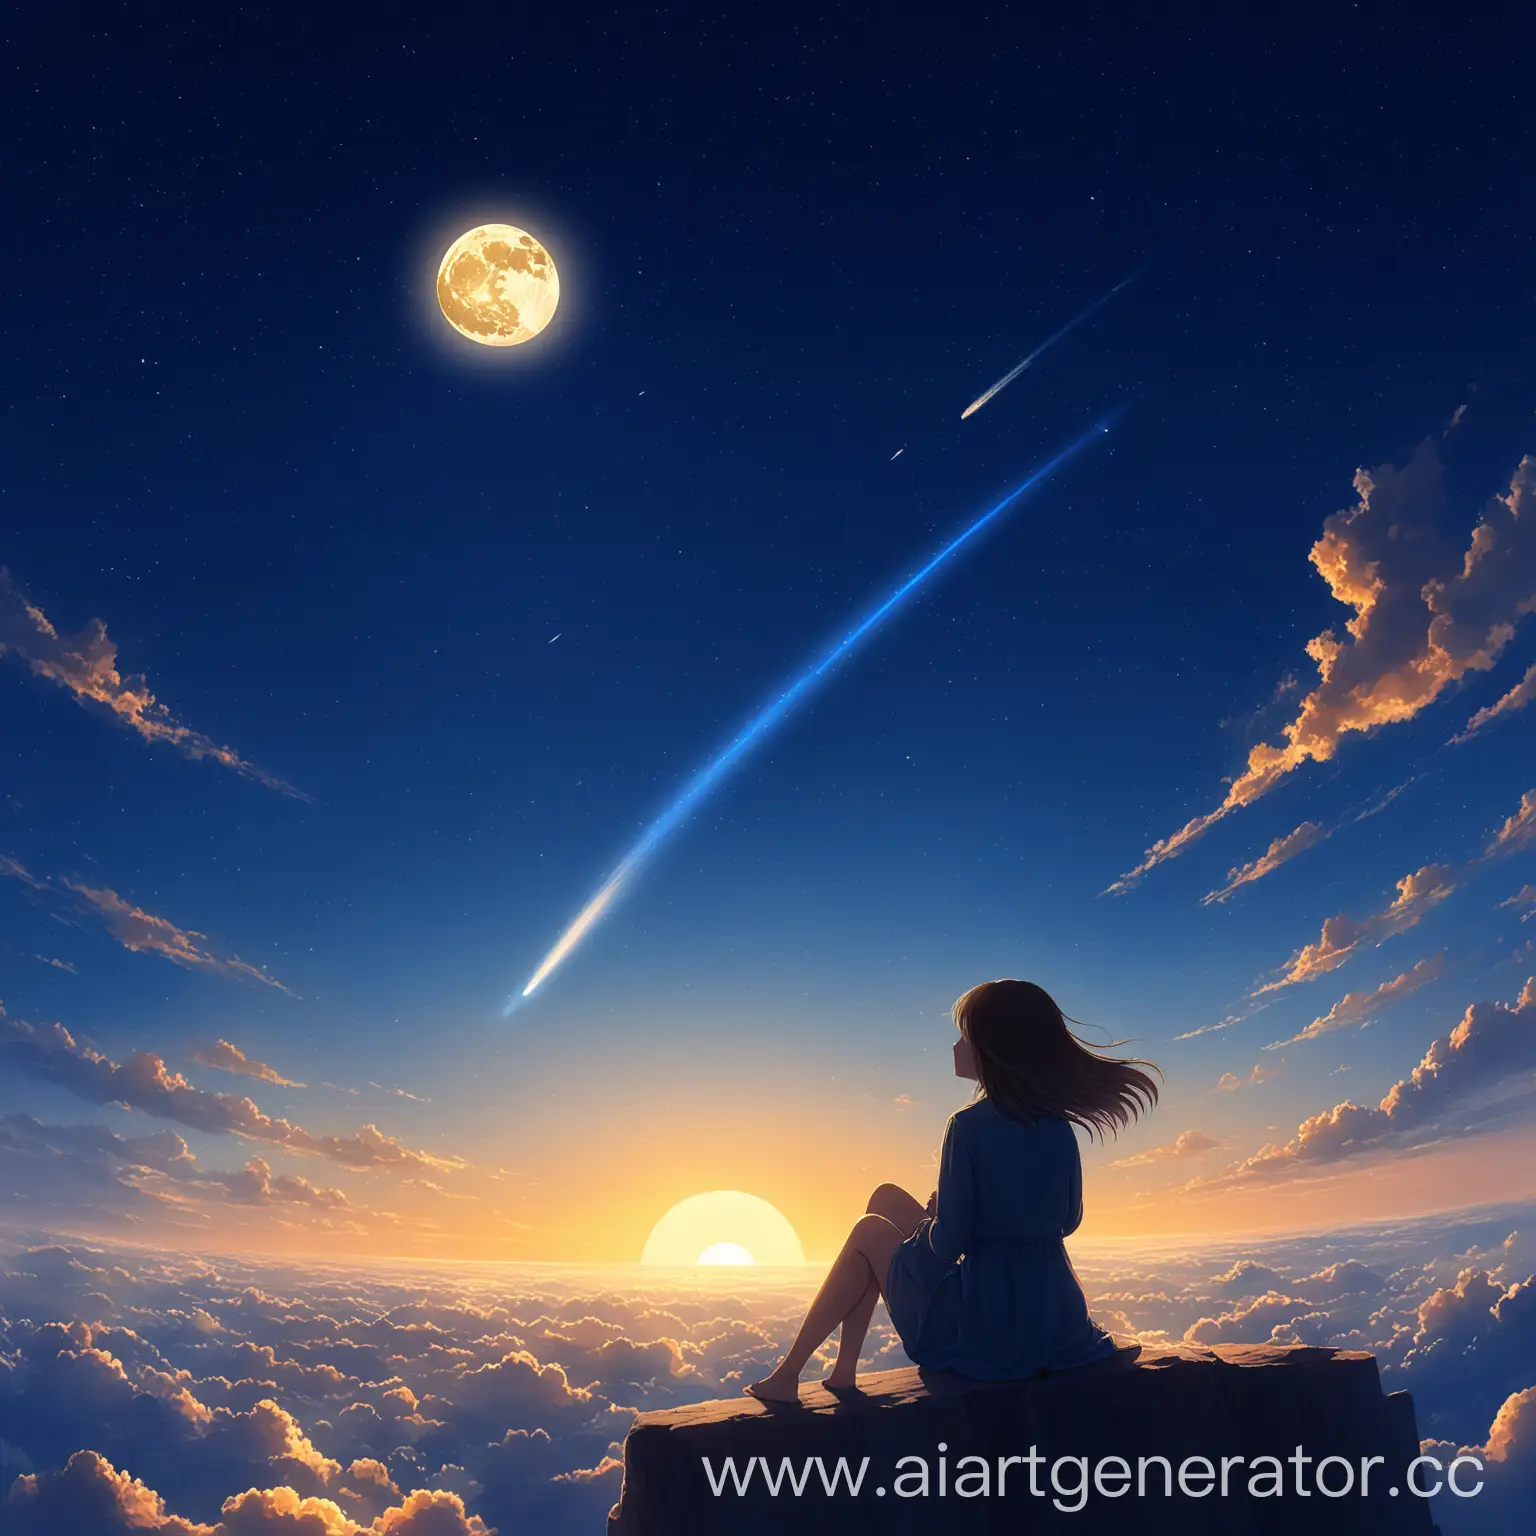 Рассвет в небе и видно луну и есть облака и пролетающая комета оставляющая за собой синий след и все это на фоне сидящей девушки